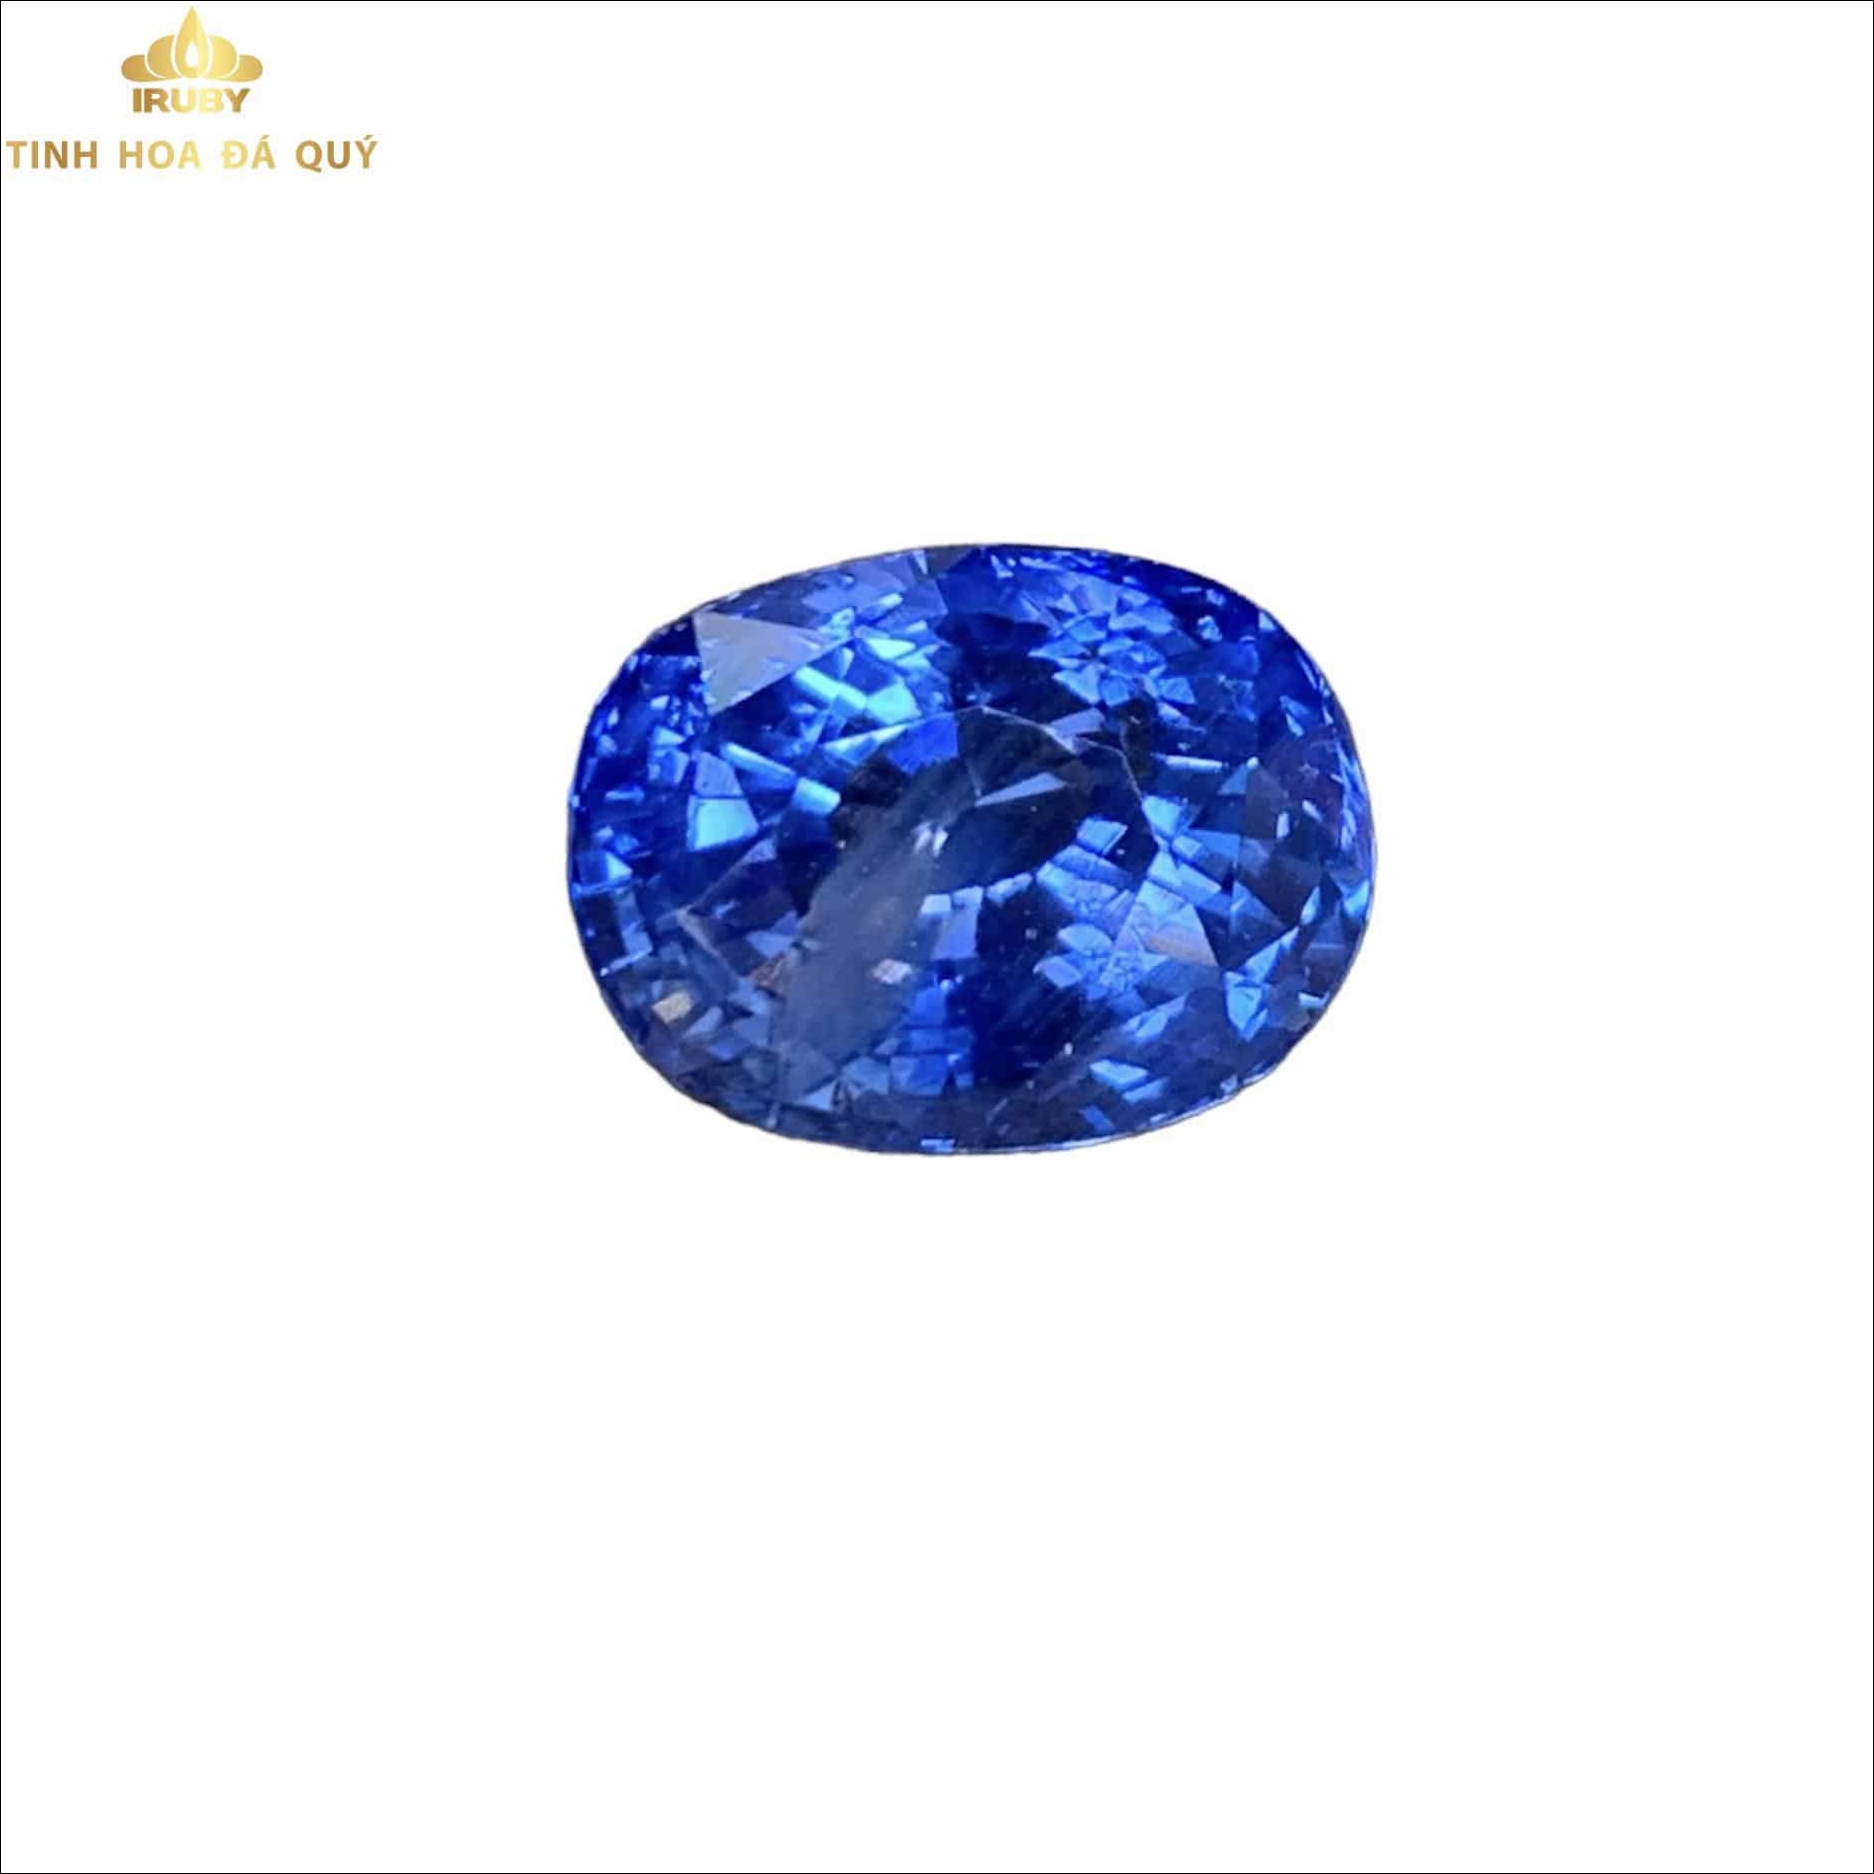 Viên Sapphire xanh lam đẹp long lanh 8,02ct - IRBS 2211802